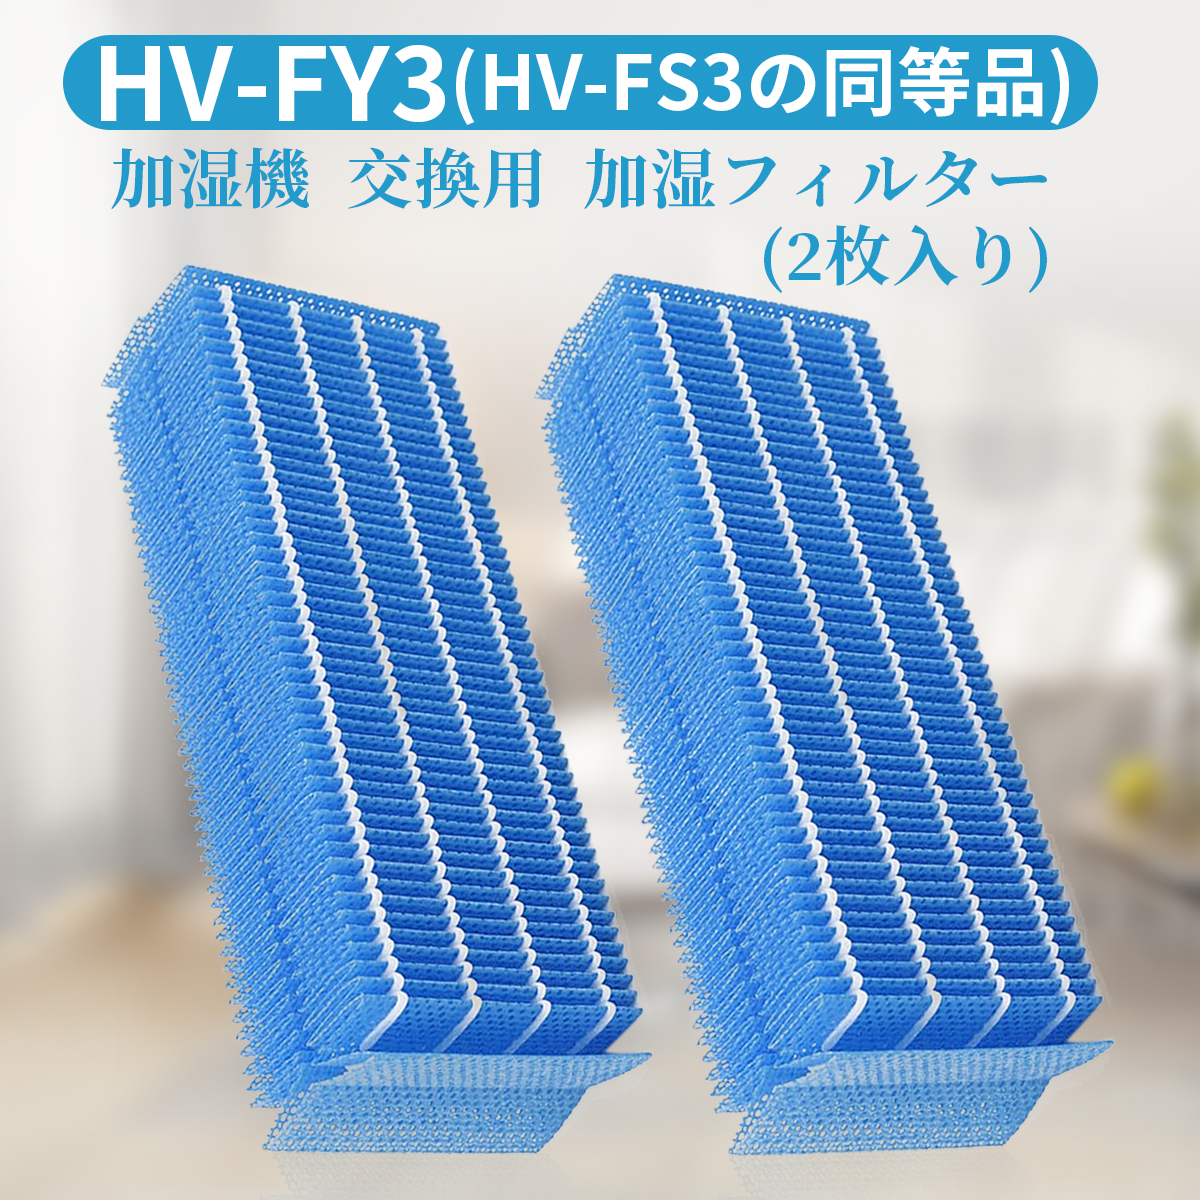 加湿機用交換フィルター hvfy3 人気ブランドの新作 hvfs3 シャープ 加湿器 加湿フィルター HV-FY3 日本最大級 フィルター 気化式加湿機交換用フィルター HV-FS3の代替品 hv-fy3 2枚入り 互換品